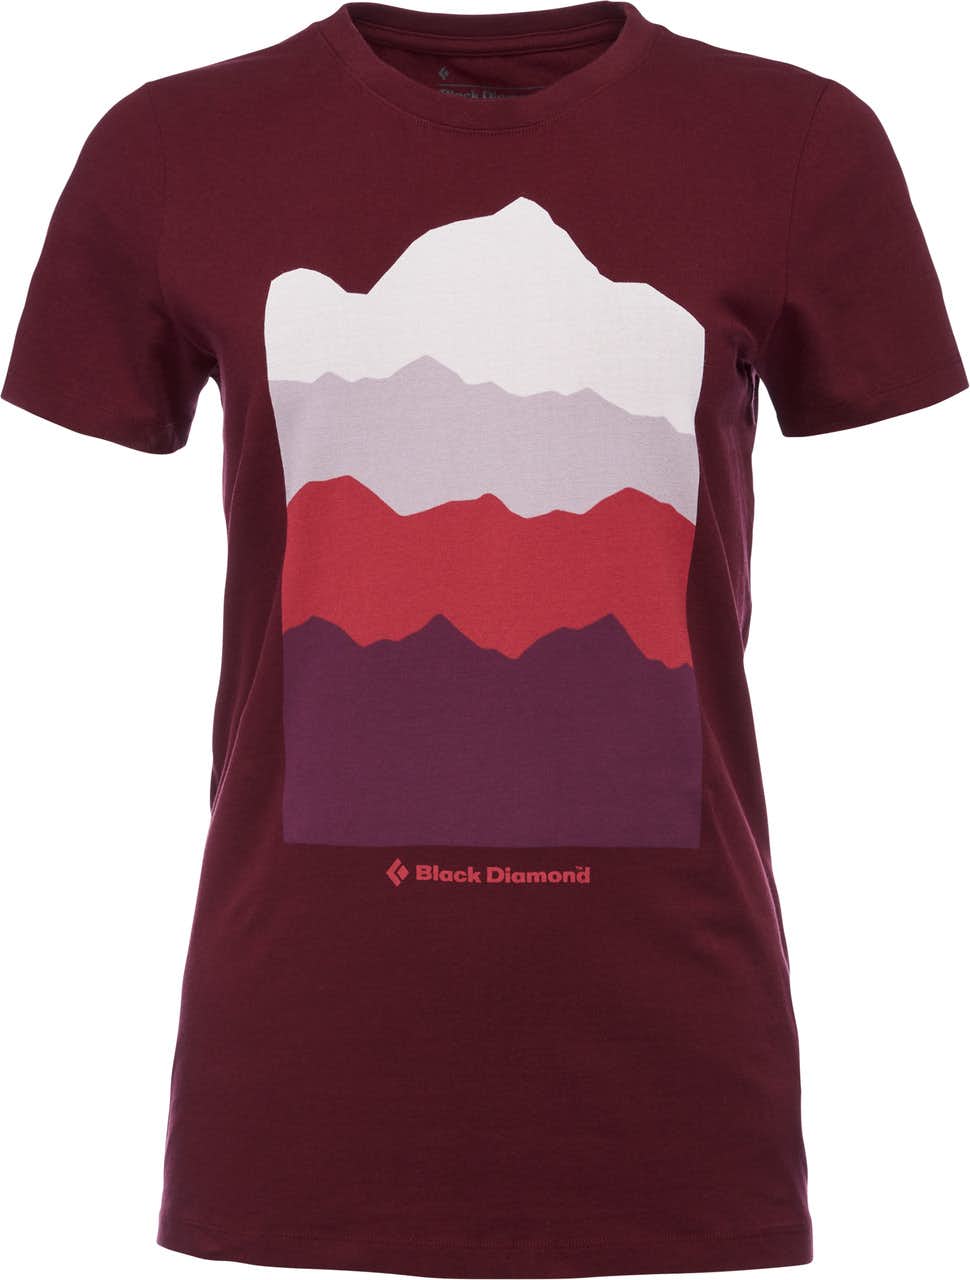 Vista T-shirt Short Sleeve Bordeaux